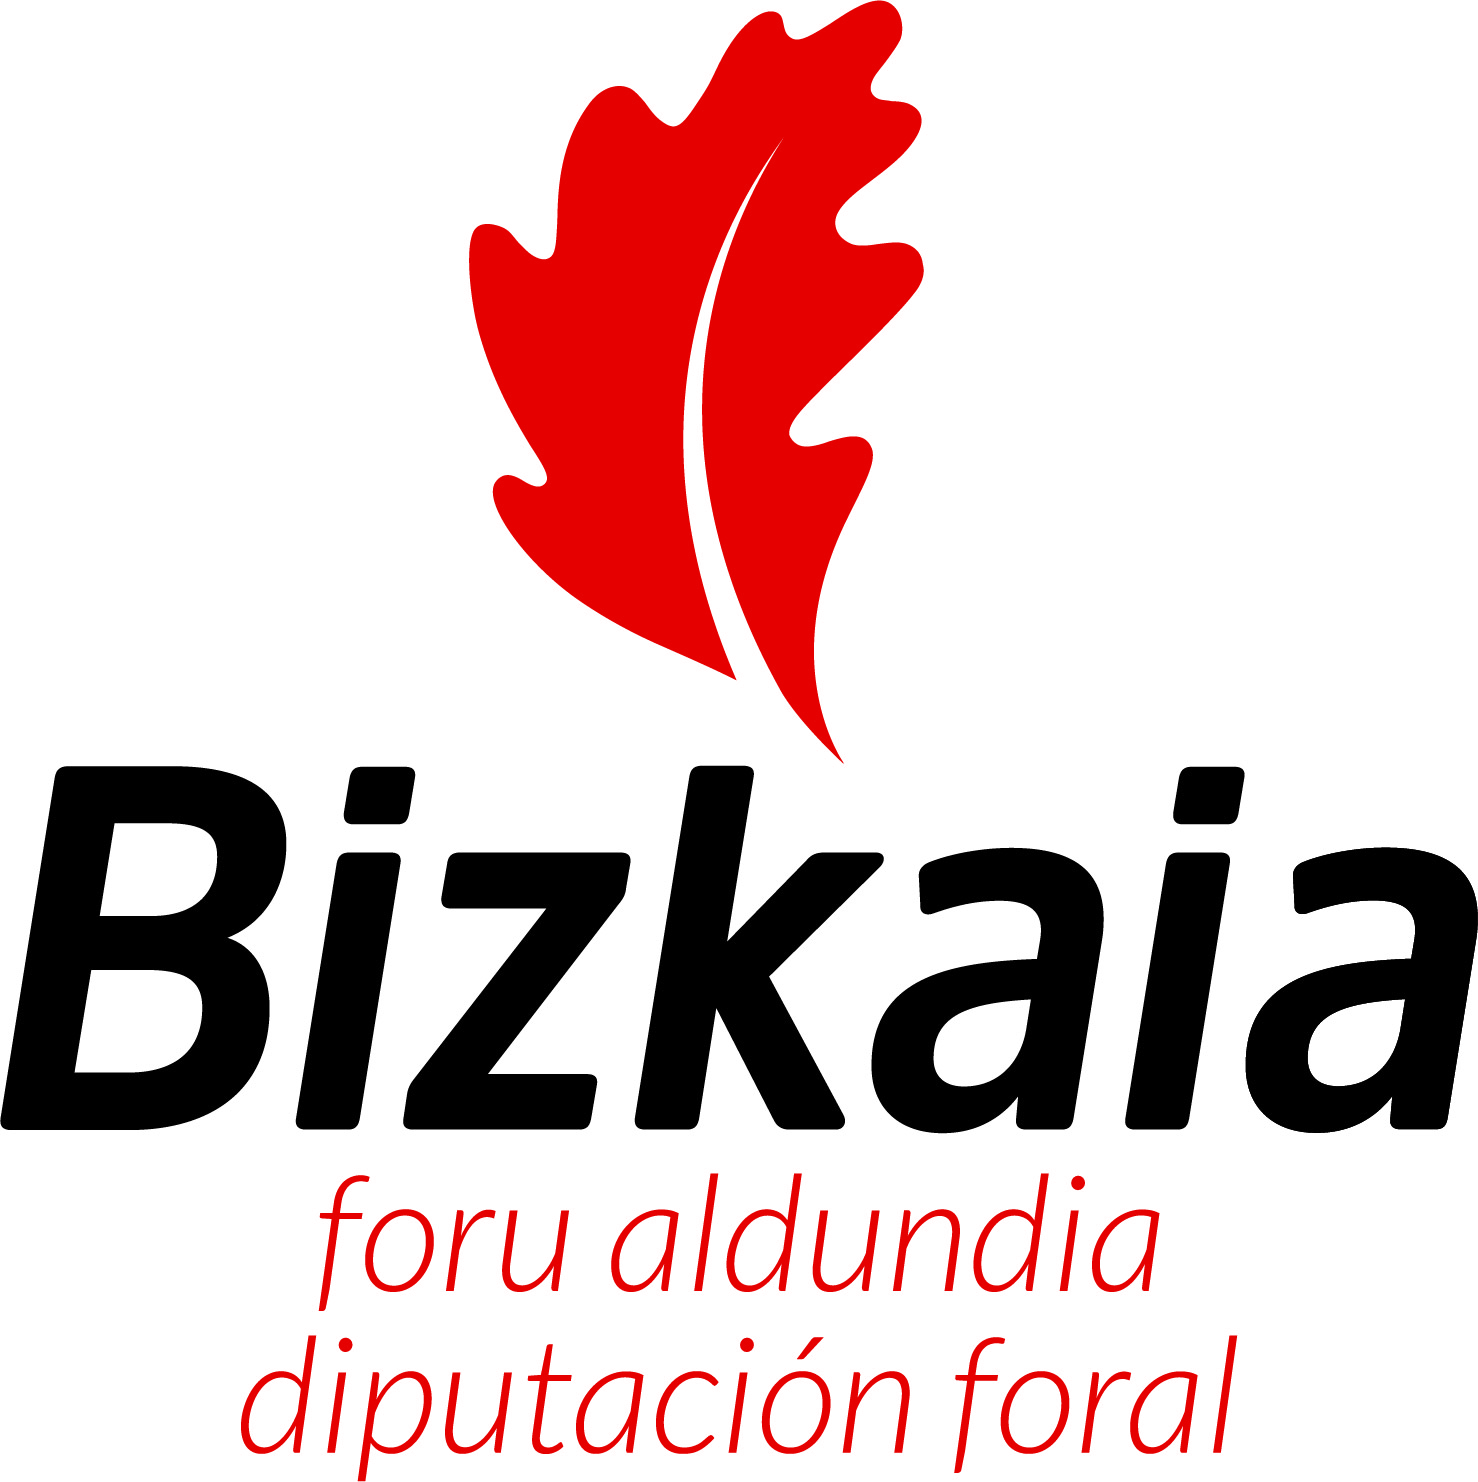 DIPUTACIÓN FORAL DE BIZKAIA